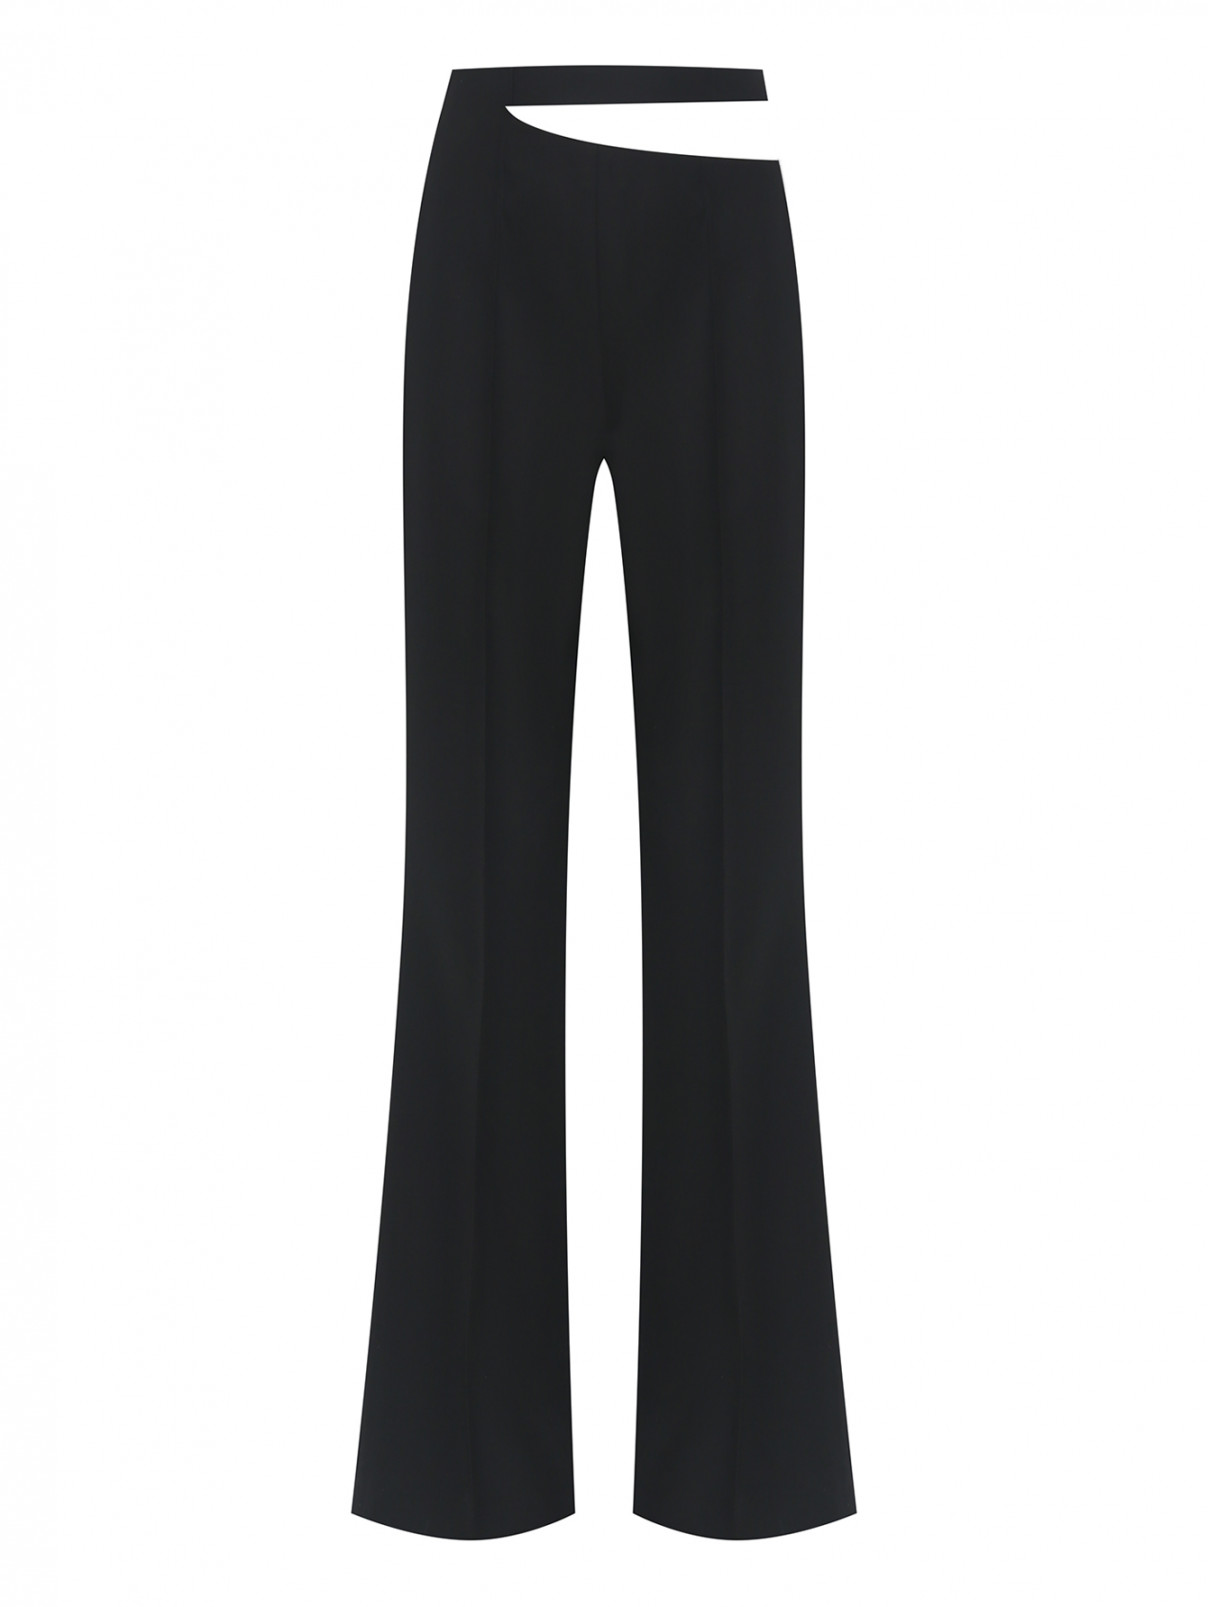 Расклешенные брюки из шерсти Rohe  –  Общий вид  – Цвет:  Черный